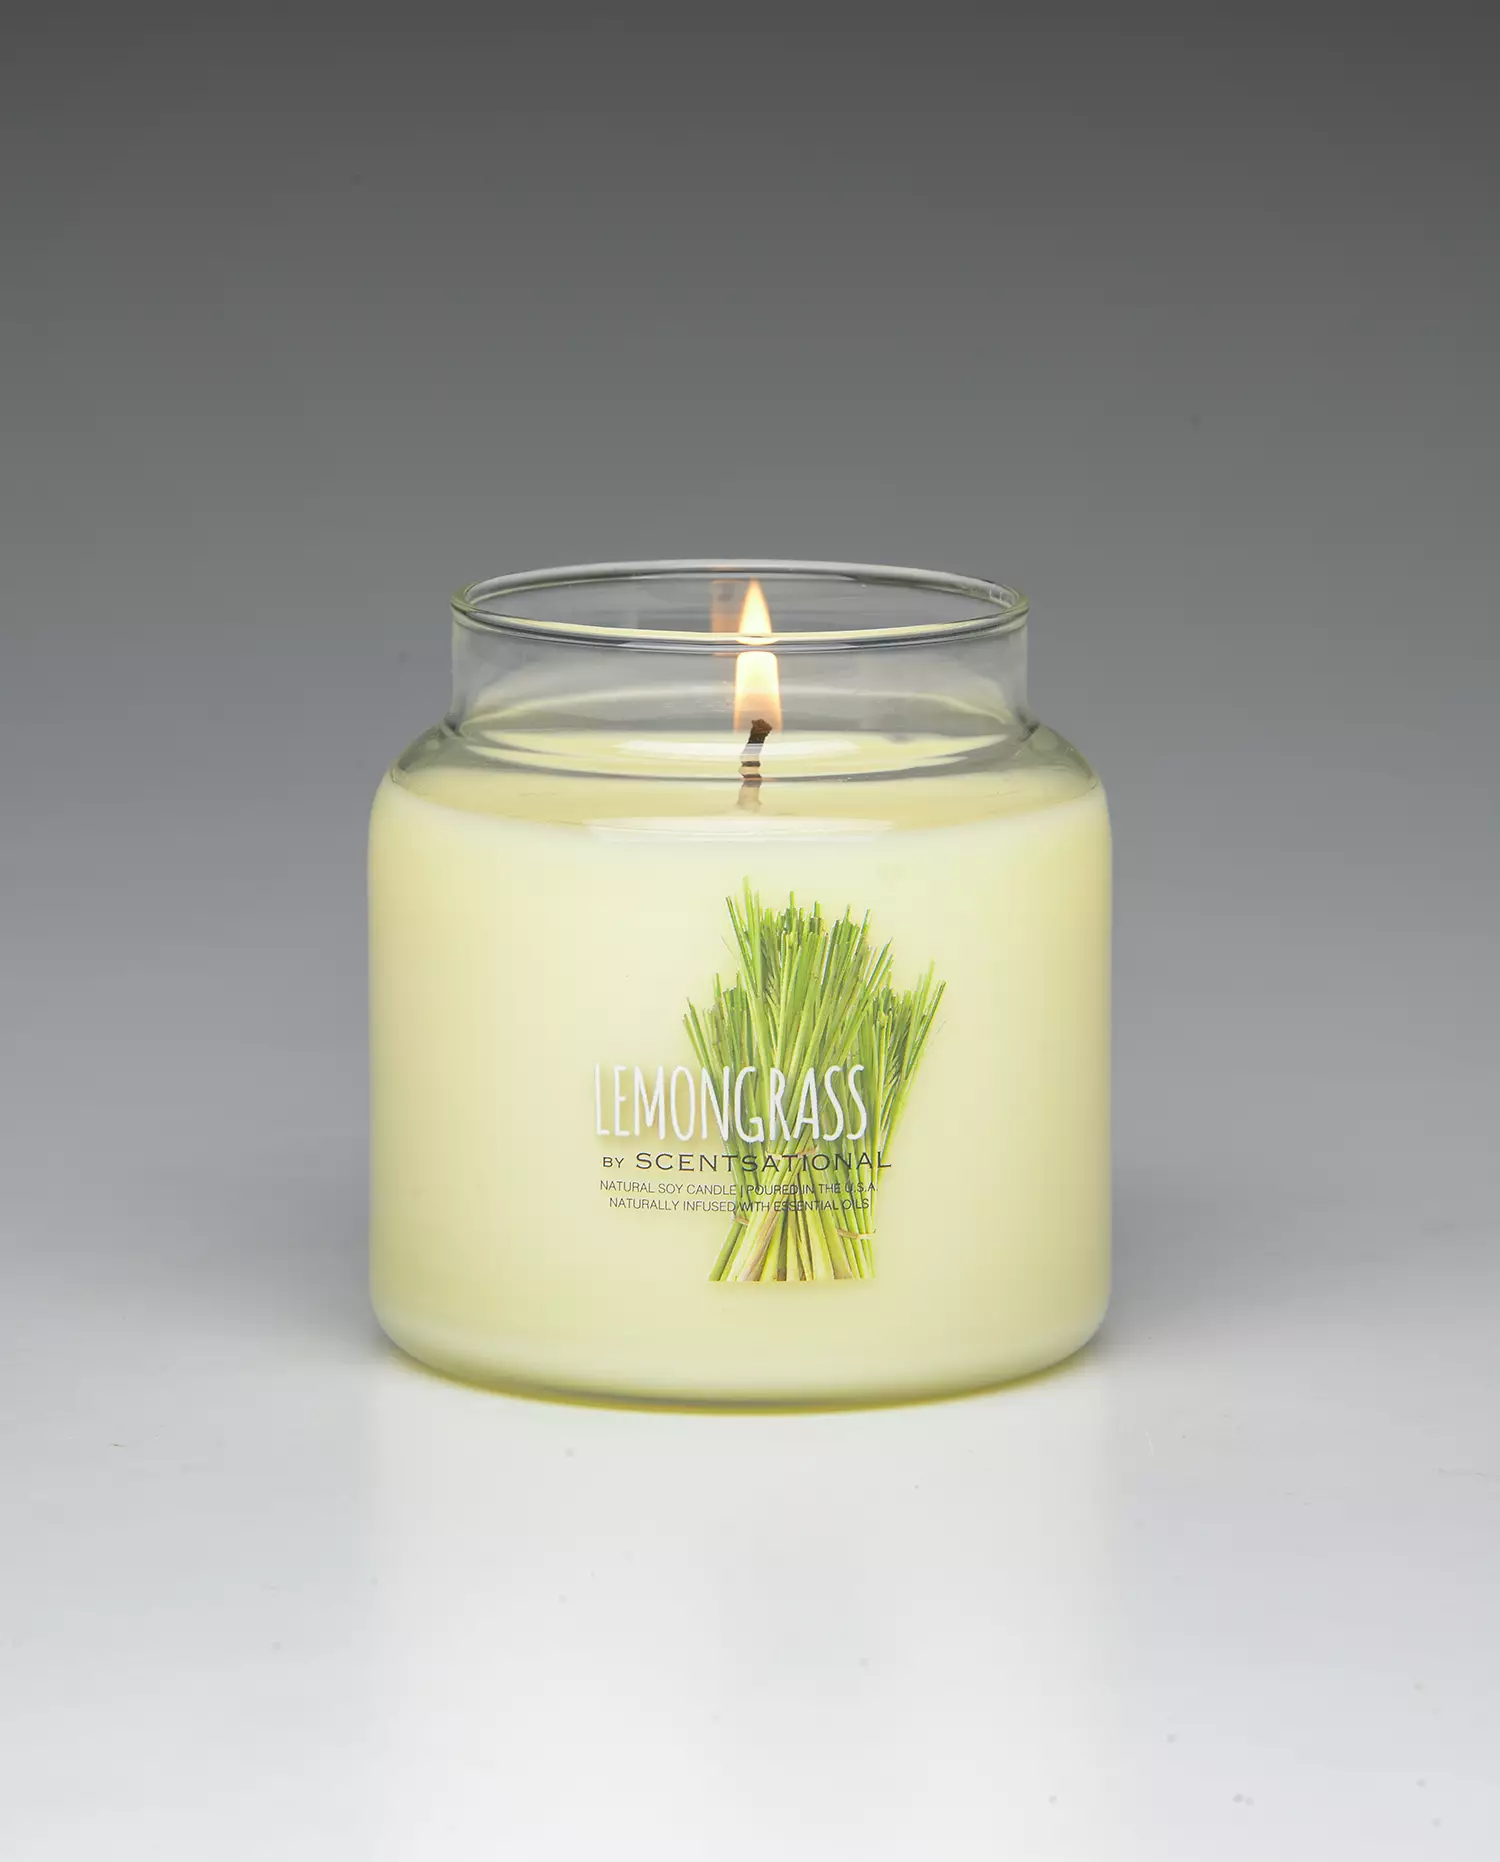 Lemongrass 19oz scented candle burning